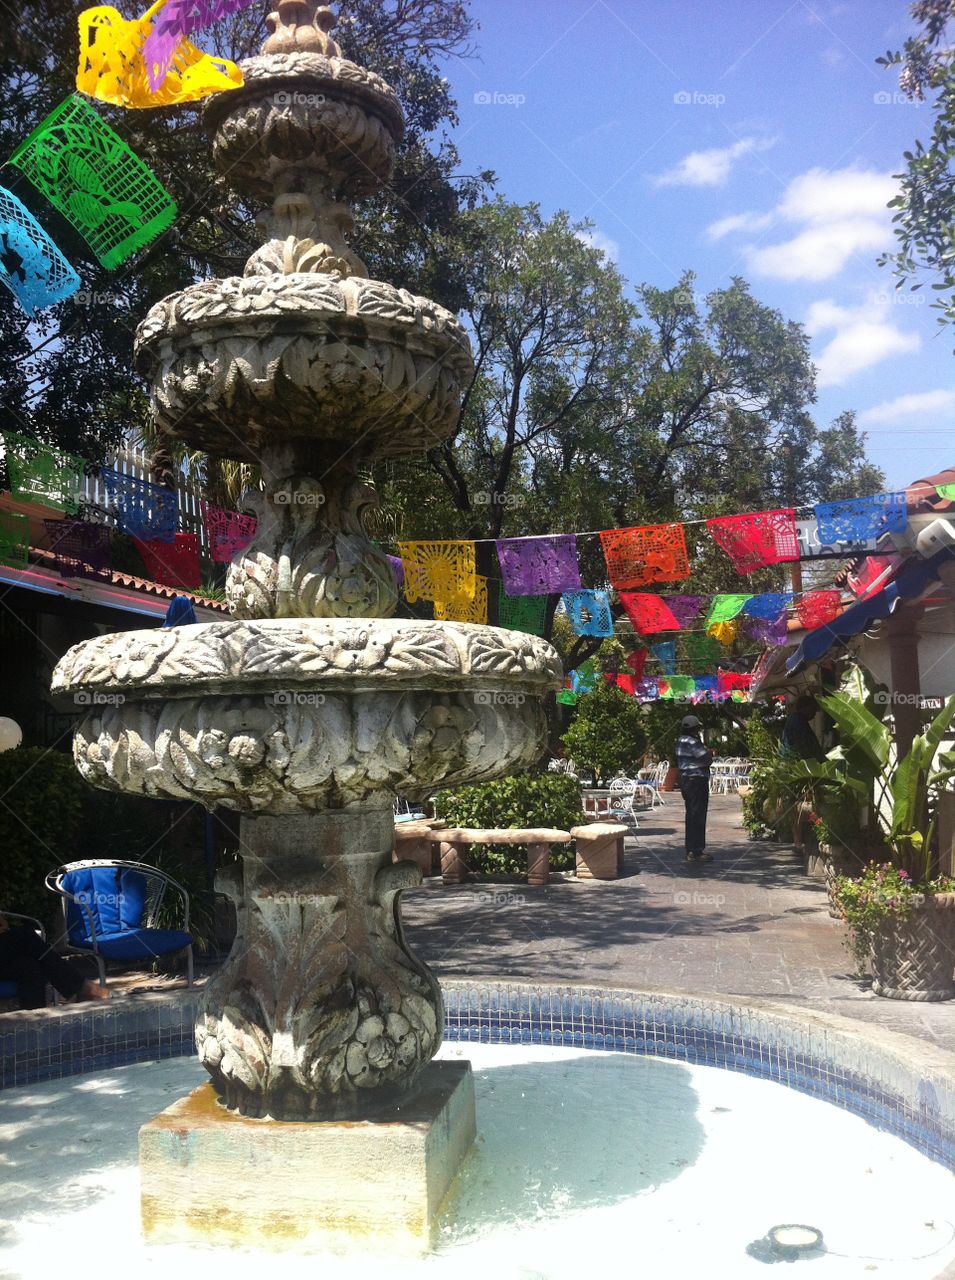 Festive Fountain. Fountain in a festive San Antonio eatery